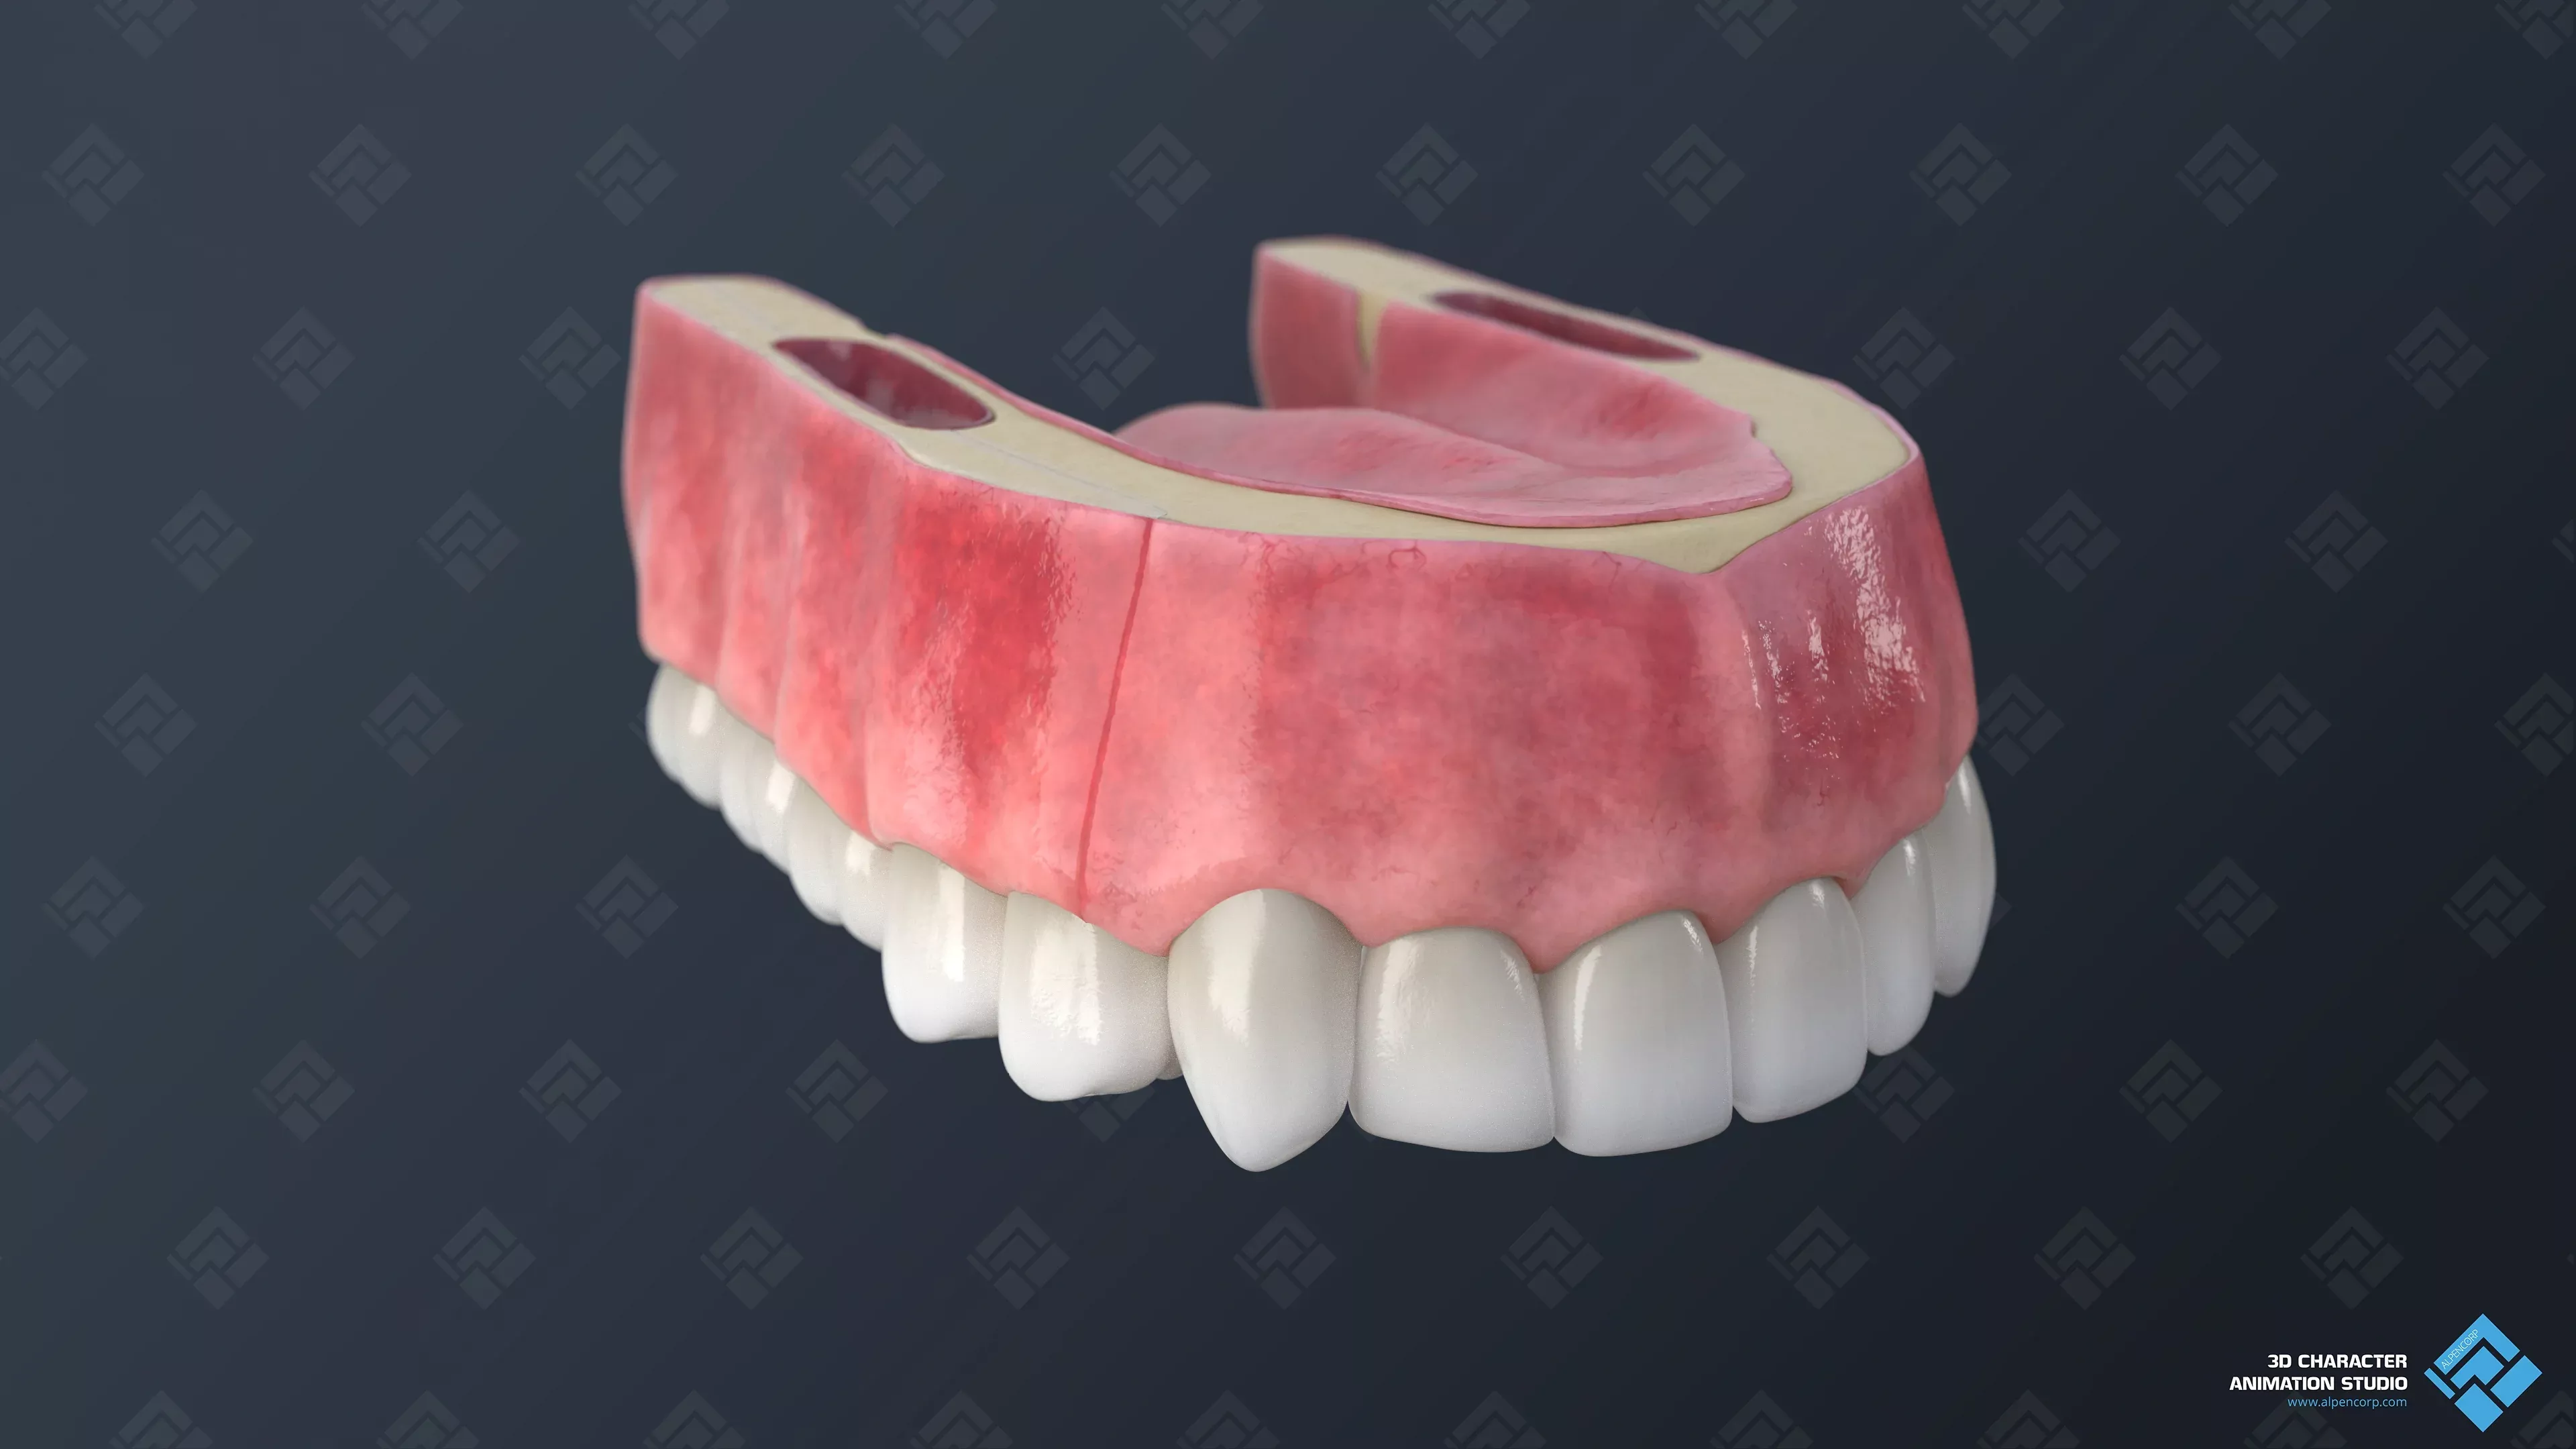 Endgültiges Render des Zahnfleisches für die 3D-Medizinanimation.